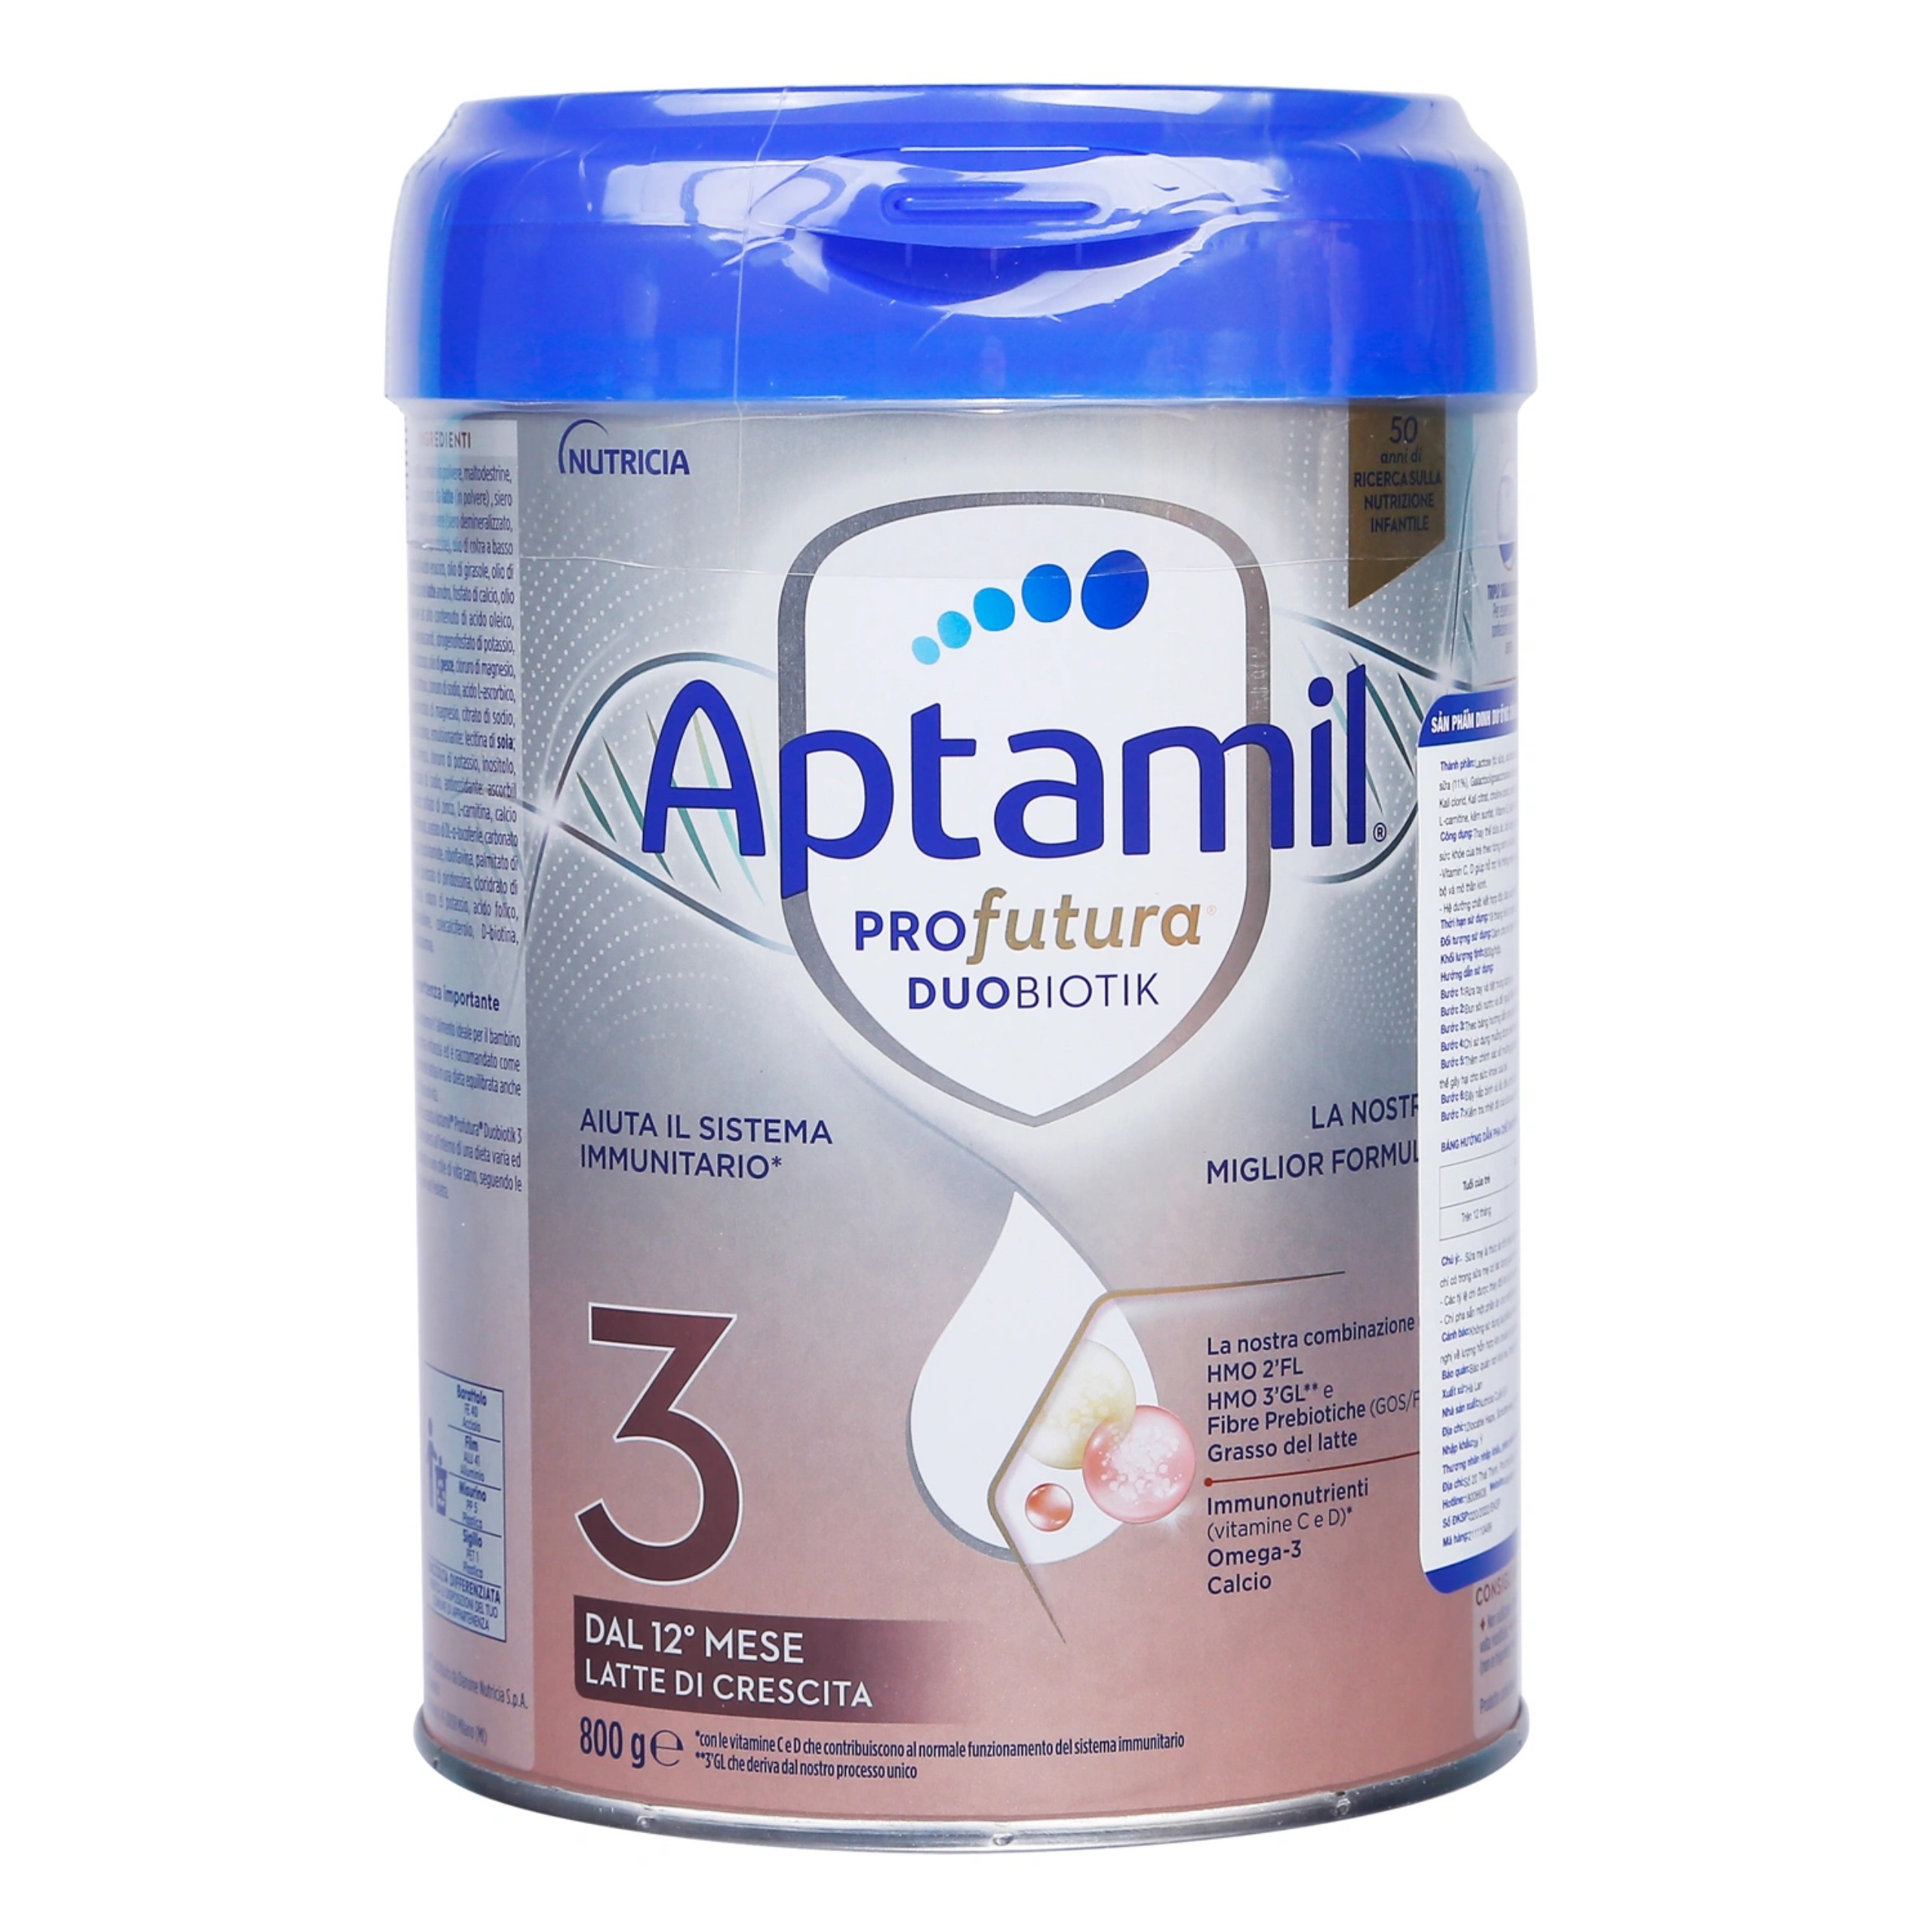 Đặc điểm nổi bật trong thiết kế bao bì sản phẩm sữa Aptamil Profutura Duobiotik